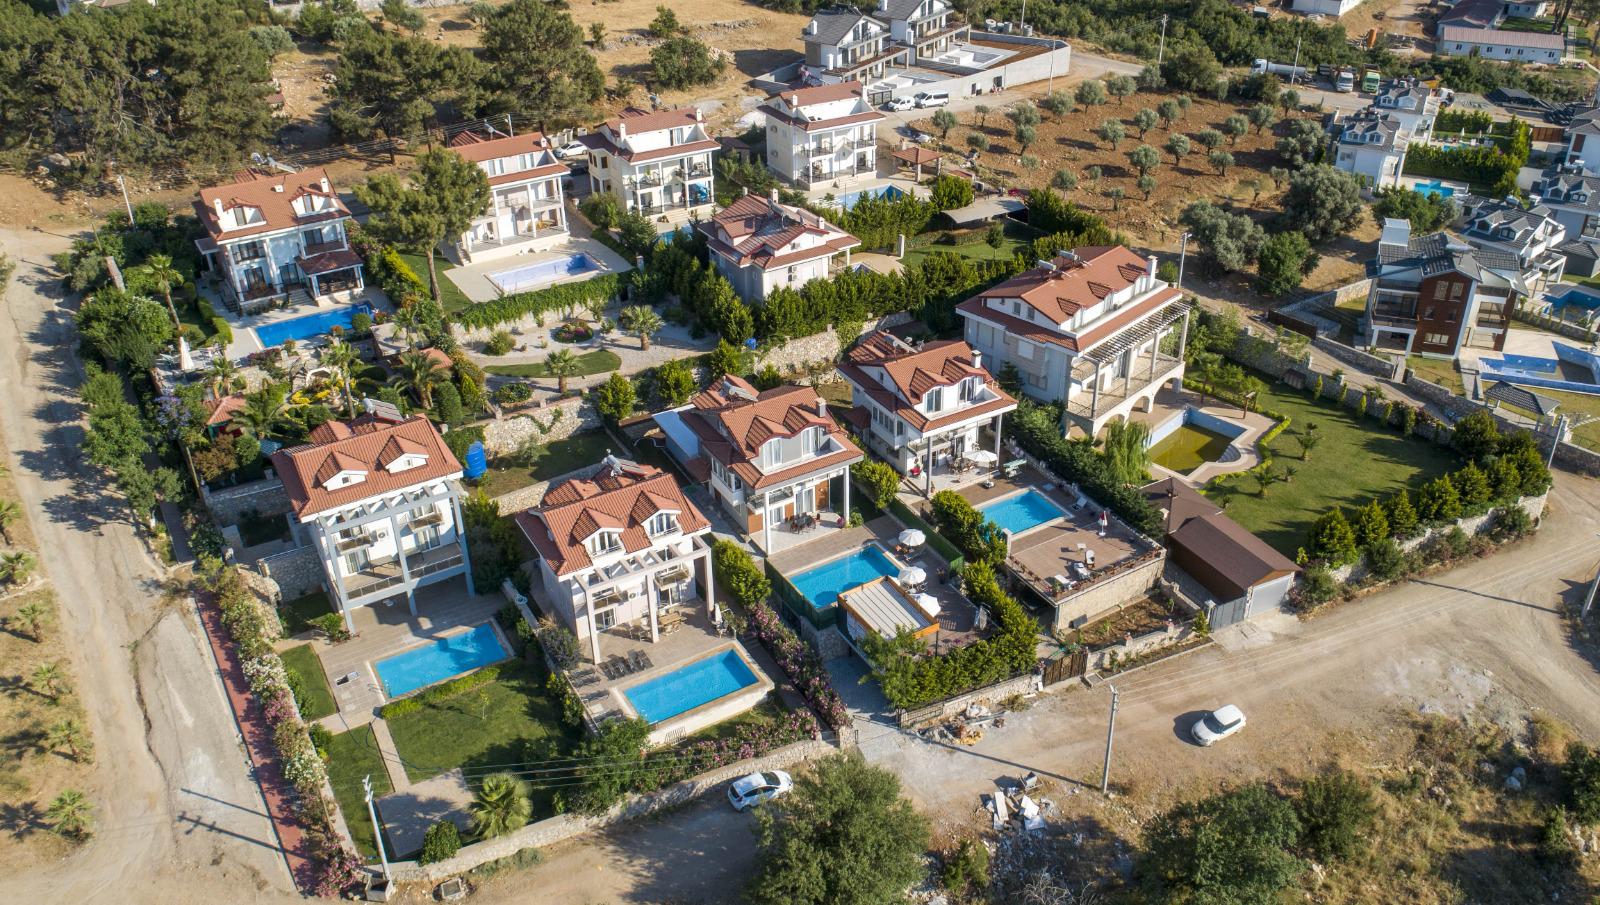 Villa in Fethiye